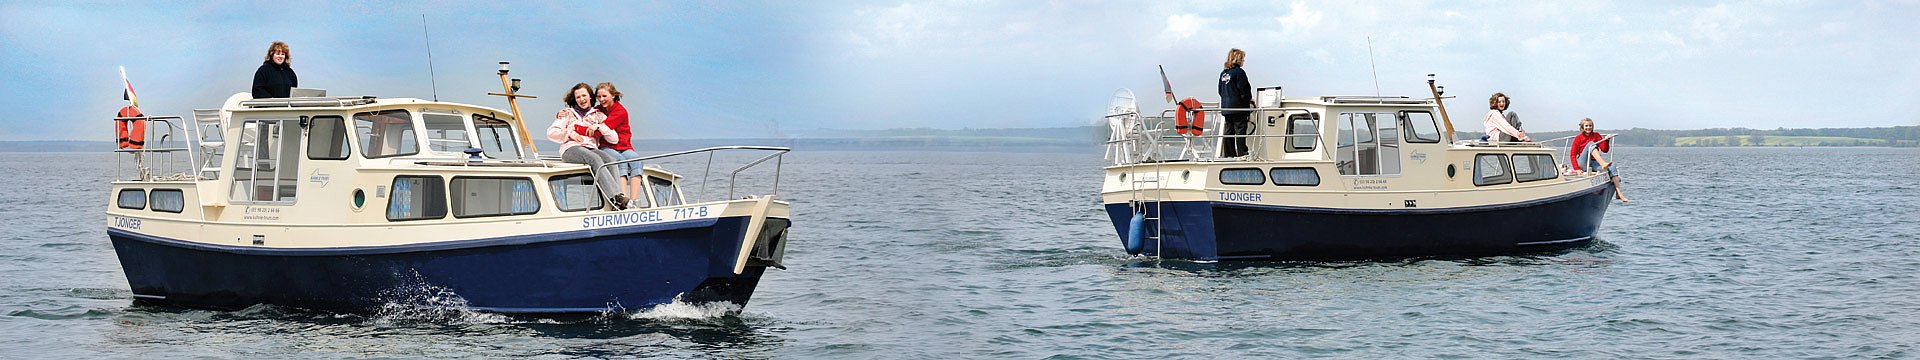 Zwei Hausboote der Marke Tjonger kreuzen sich auf einem See.